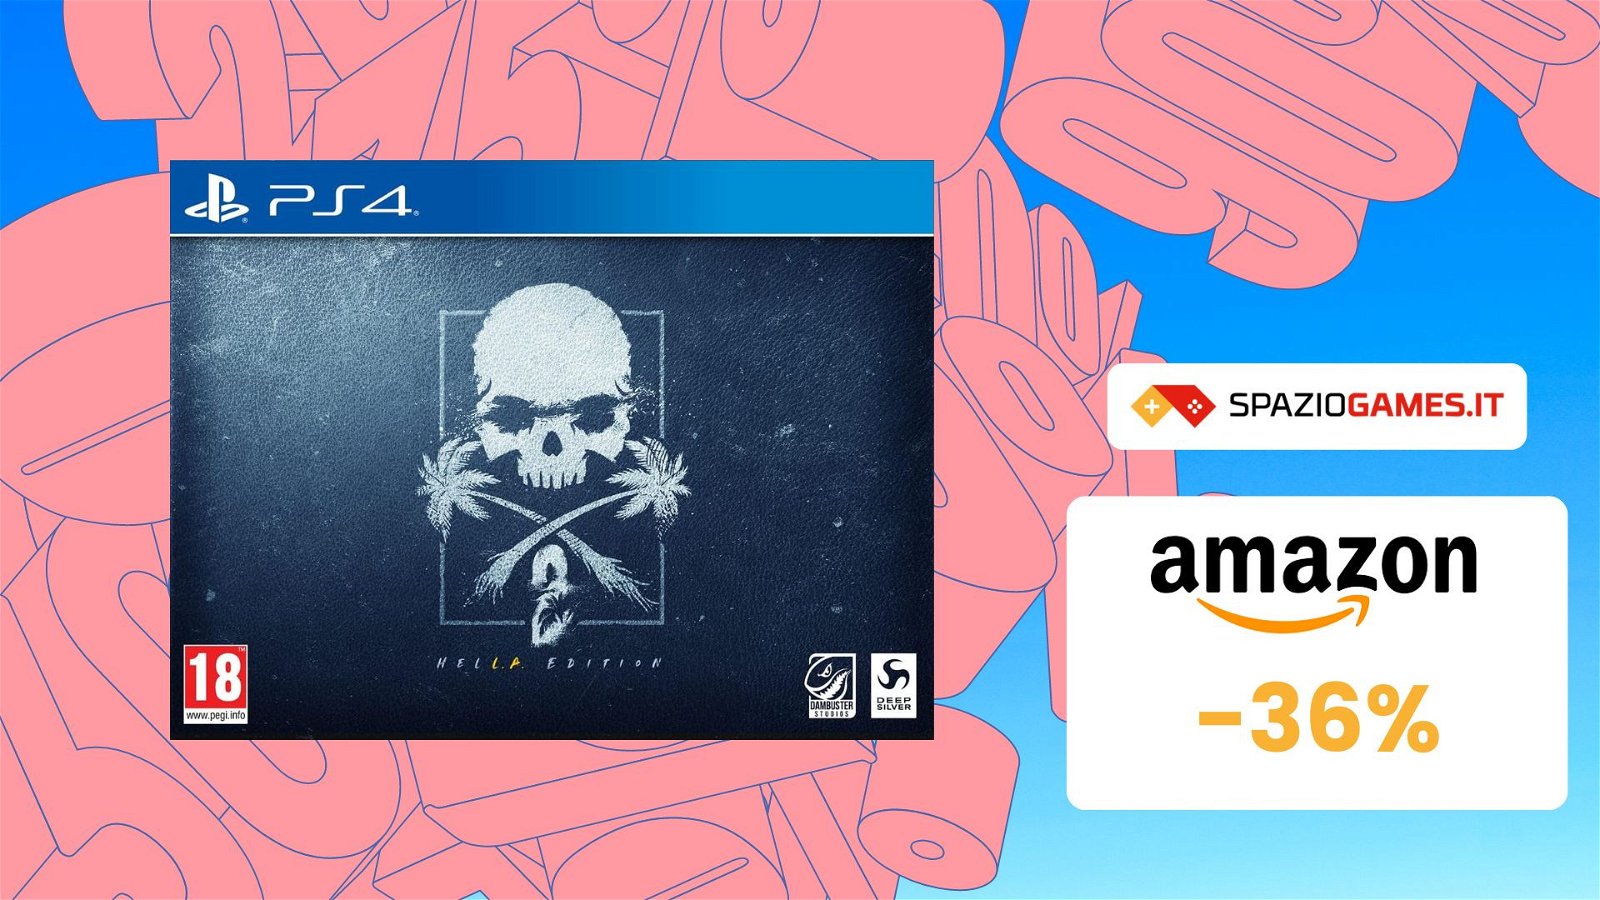 Dead Island 2 HELL-A Edition a un prezzo STRACCIATO! Lo paghi solo 64€!